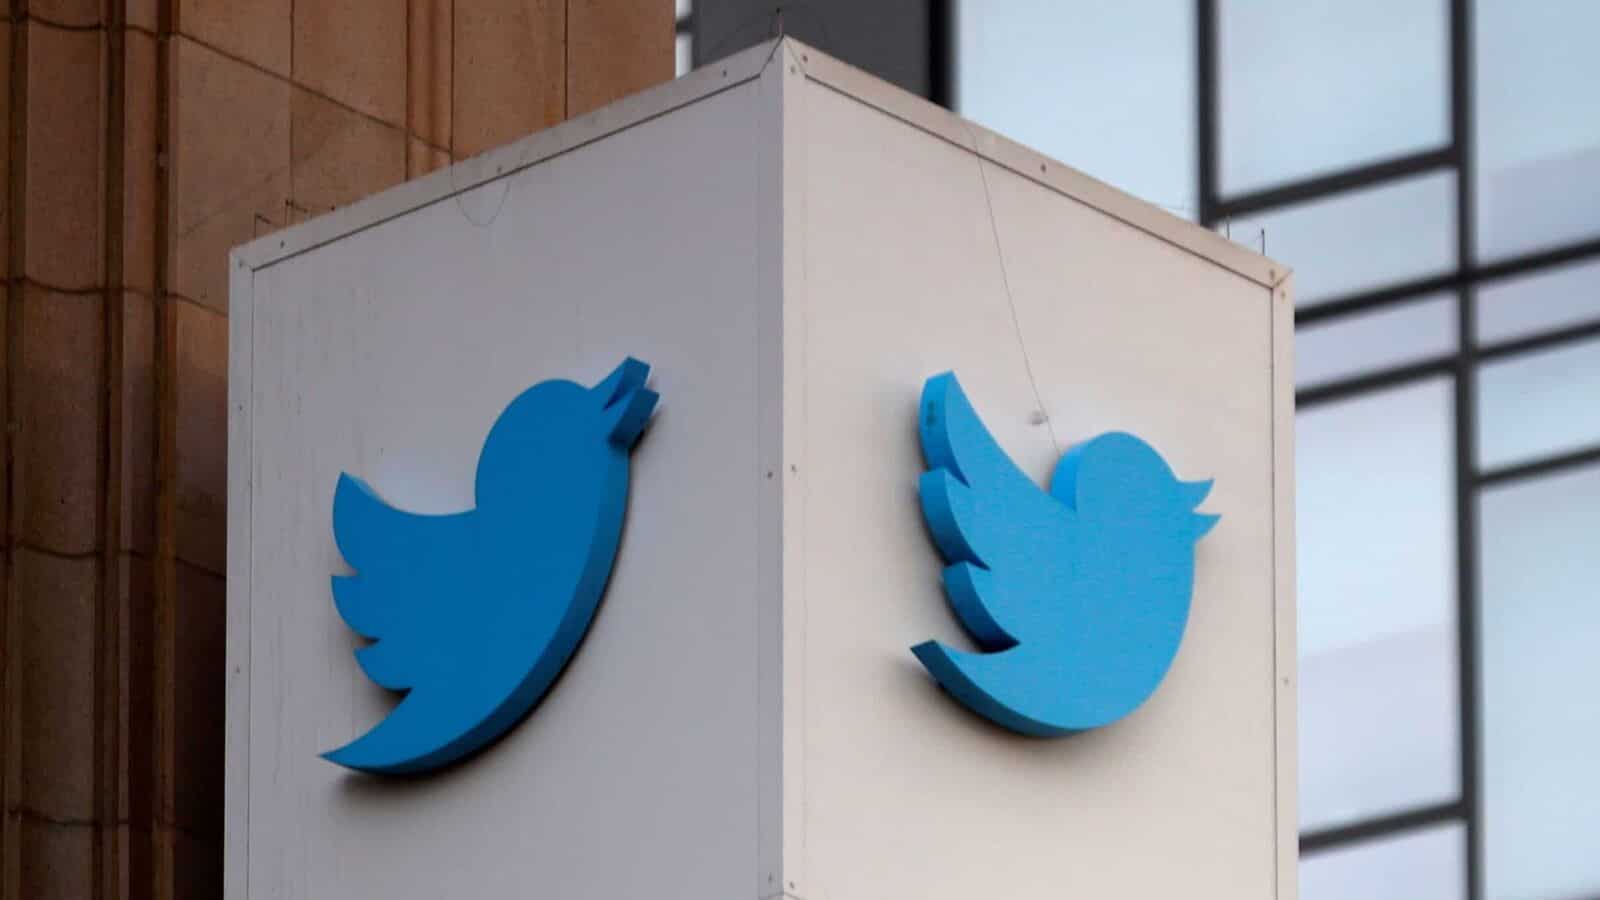 تويتر تعرض إعادة شراء سنداتها لتعزيز سلطة ماسك عليها